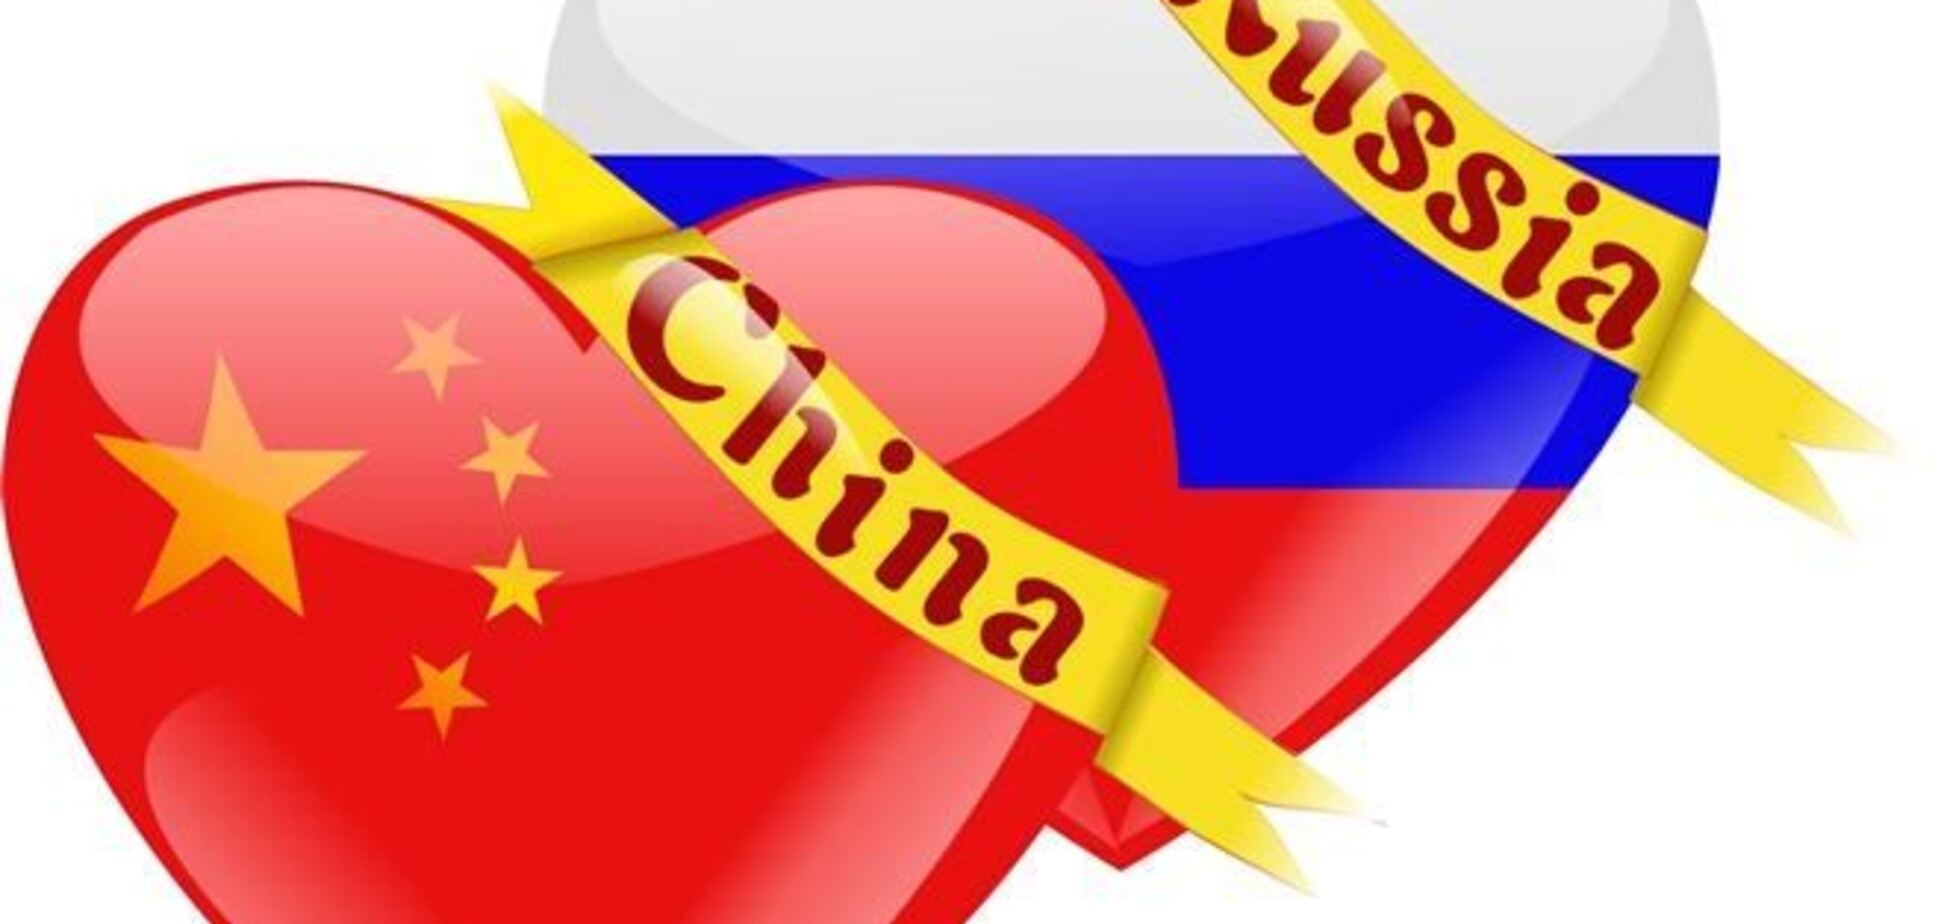 Немцов: Путин в итоге отдаст Россию Китаю